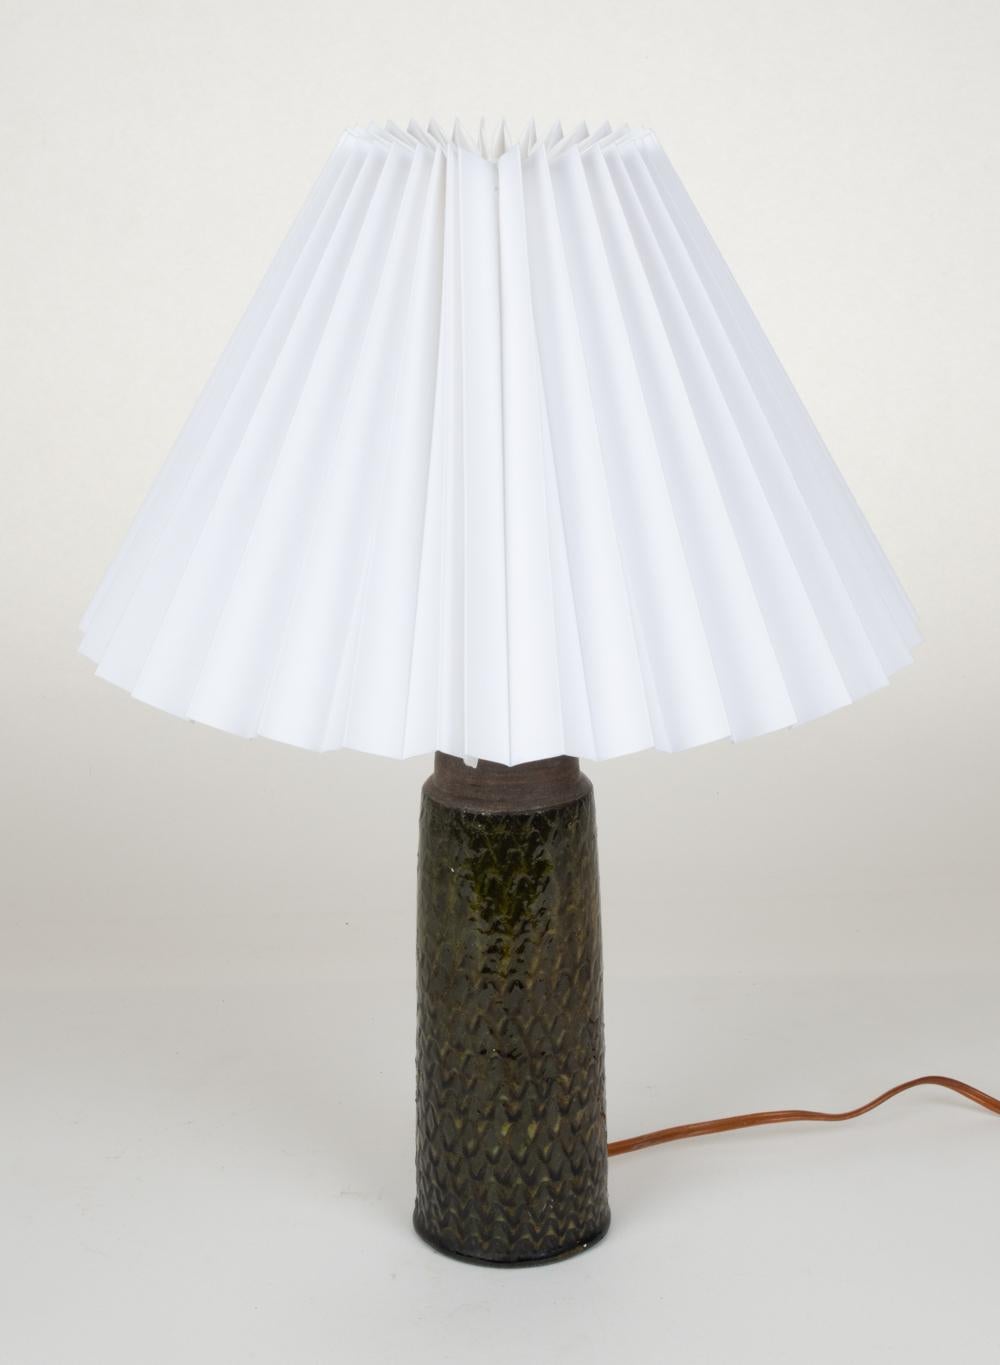 Danish Nils Kahler for HAK Scandinavian Modern Stoneware Table Lamp